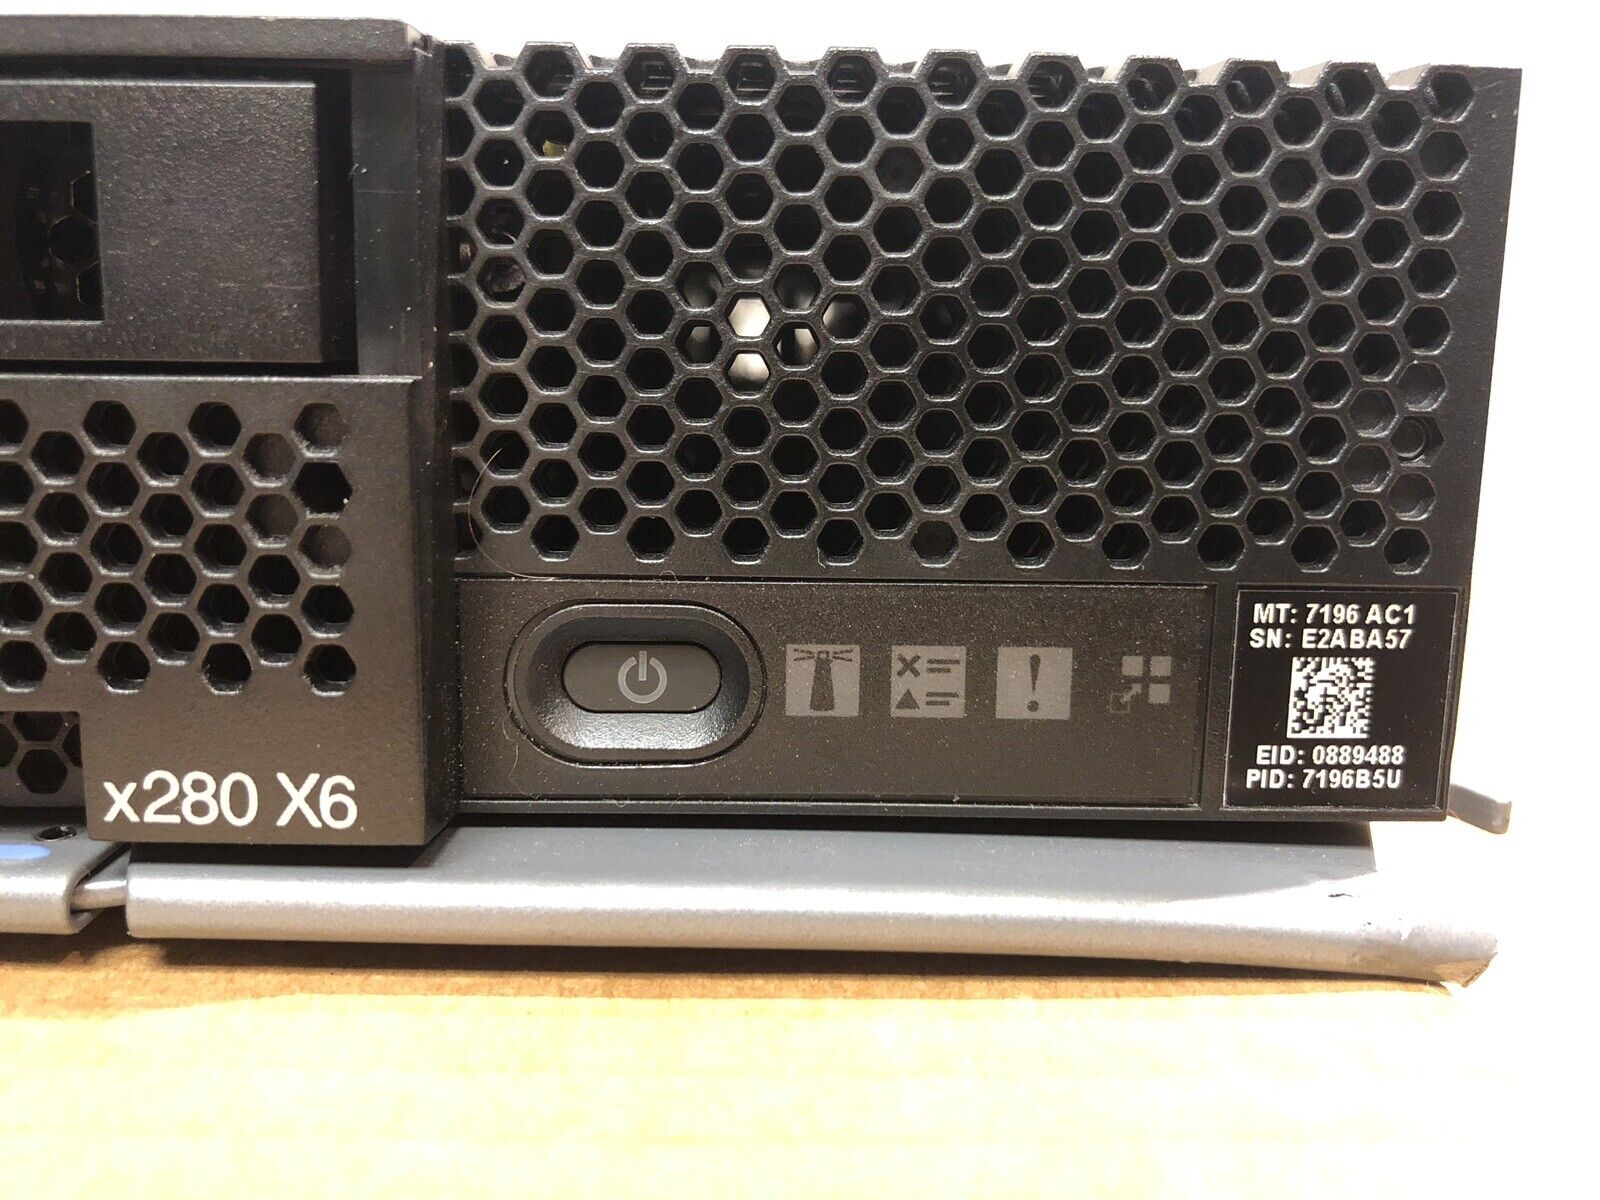 Lenovo FlexSystem x280 X6 Server Two E7-2880V2 2.5GHz 15/30 Core 256GB 2x SFF.